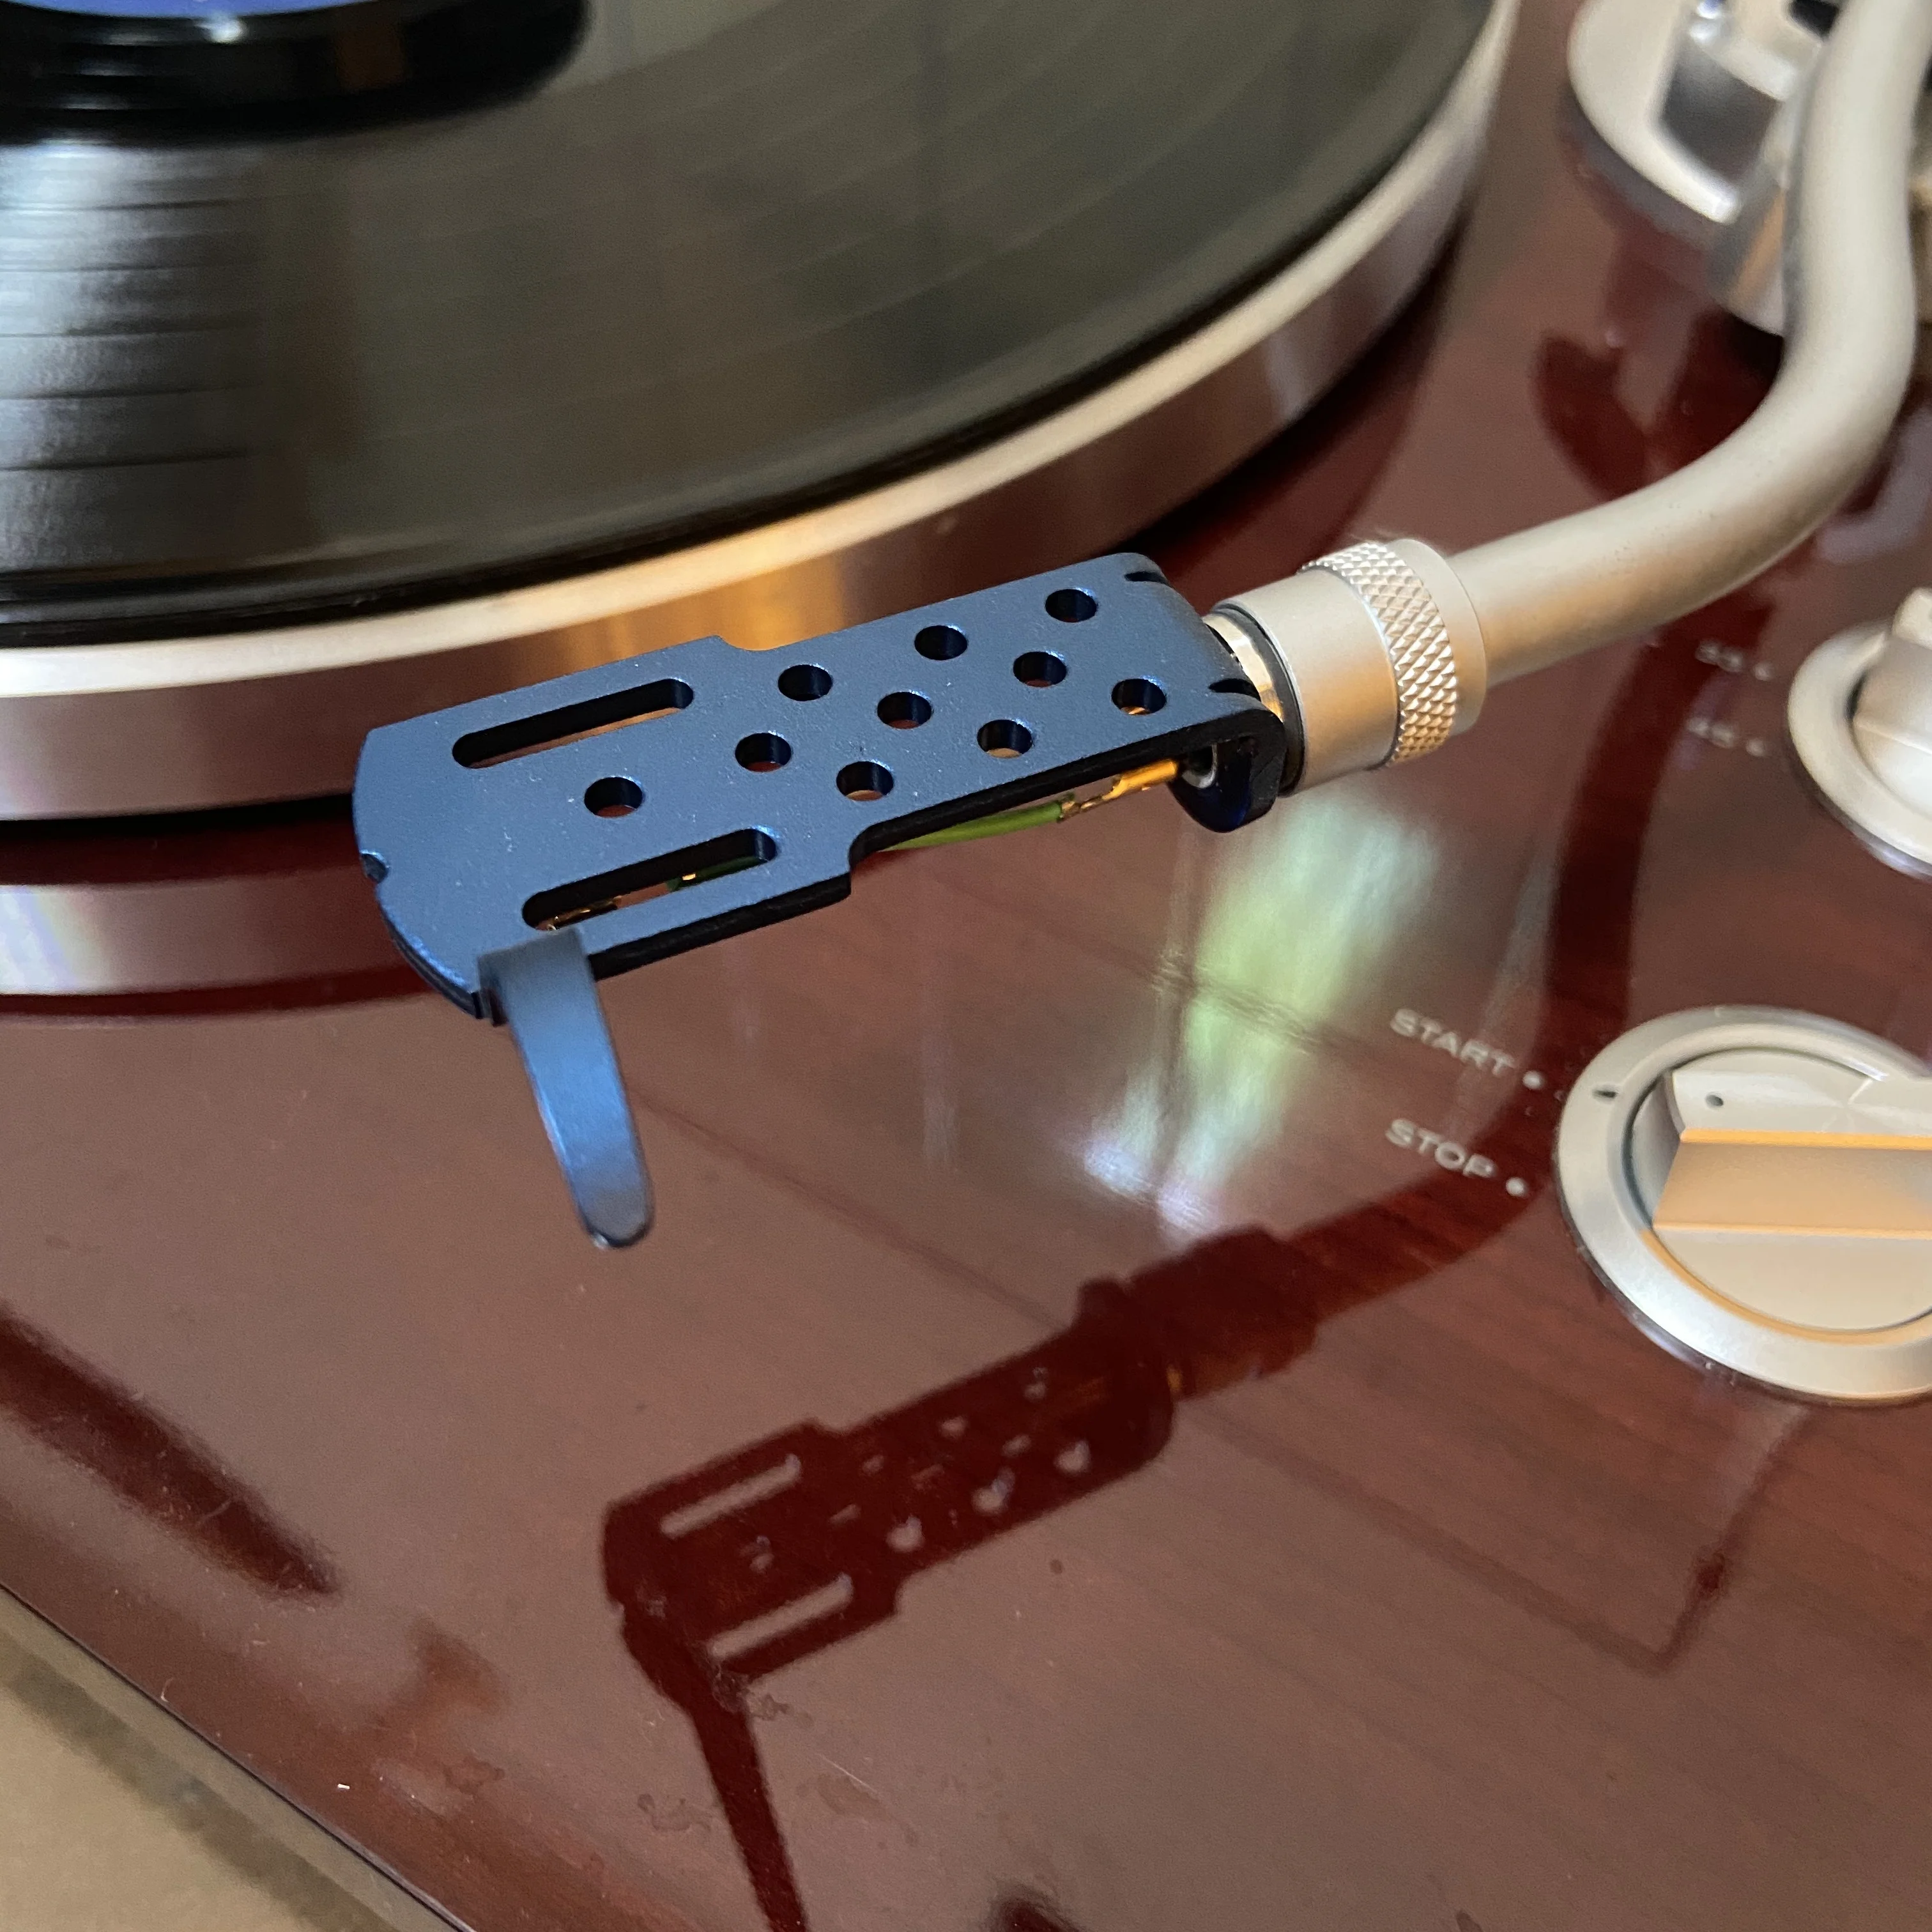 Cartridge-Combo-Kit ASHATA Plattenspieler-Headshell Plattenspieler-Phonograph-Player Headshell High-End-Phono-Cartridge-Headshell-Plattenspieler-Kit für High-End-Phonographen/Tonabnehmer Blau 